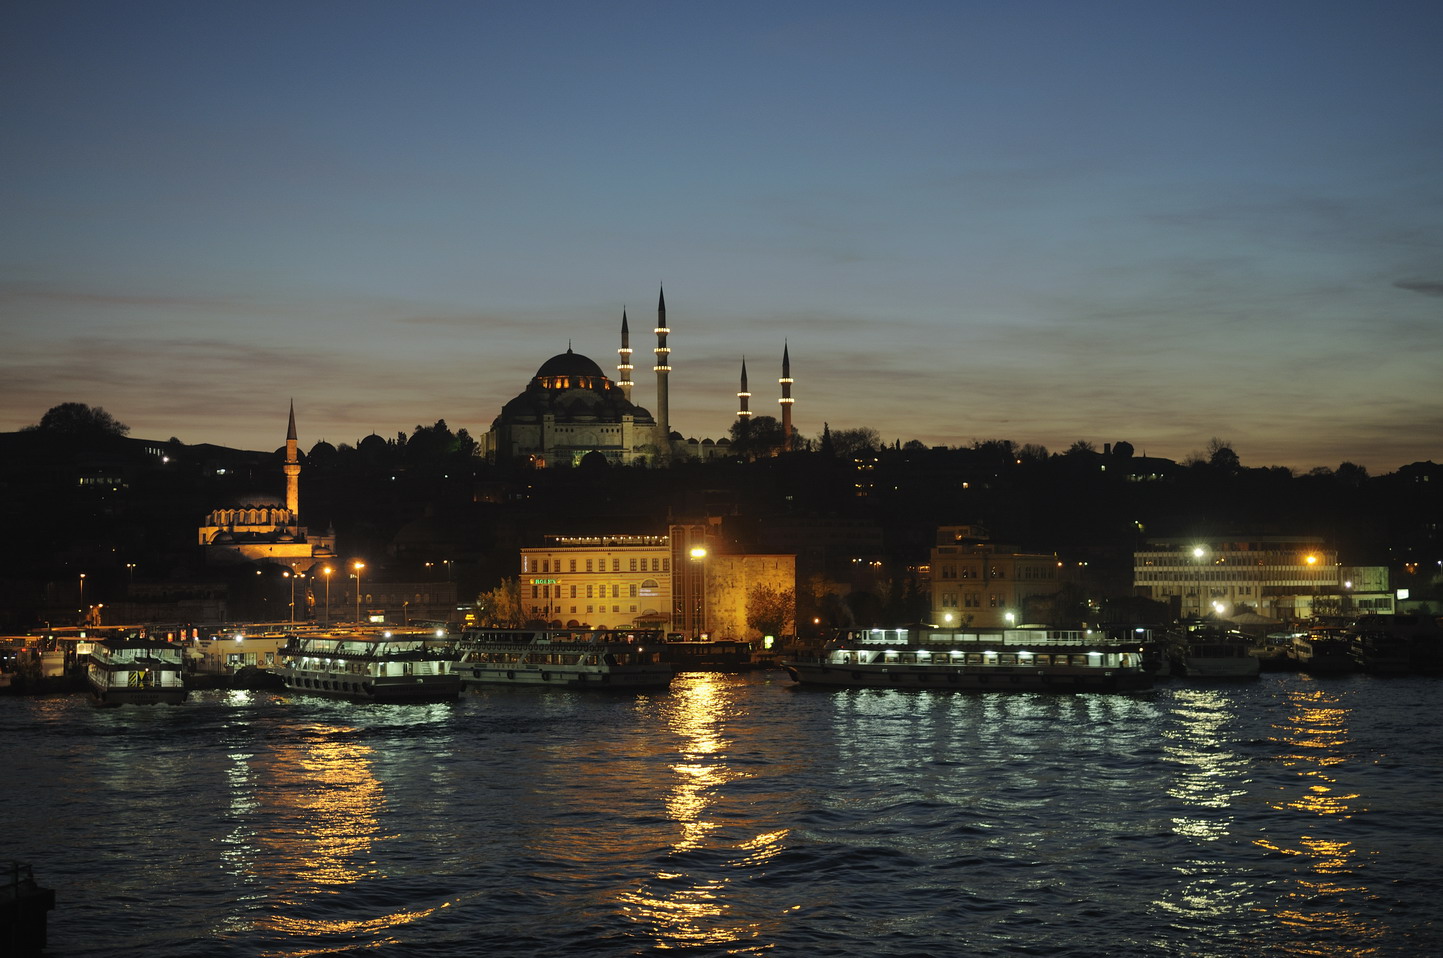 La noche de Estambul en el cuerno de oro